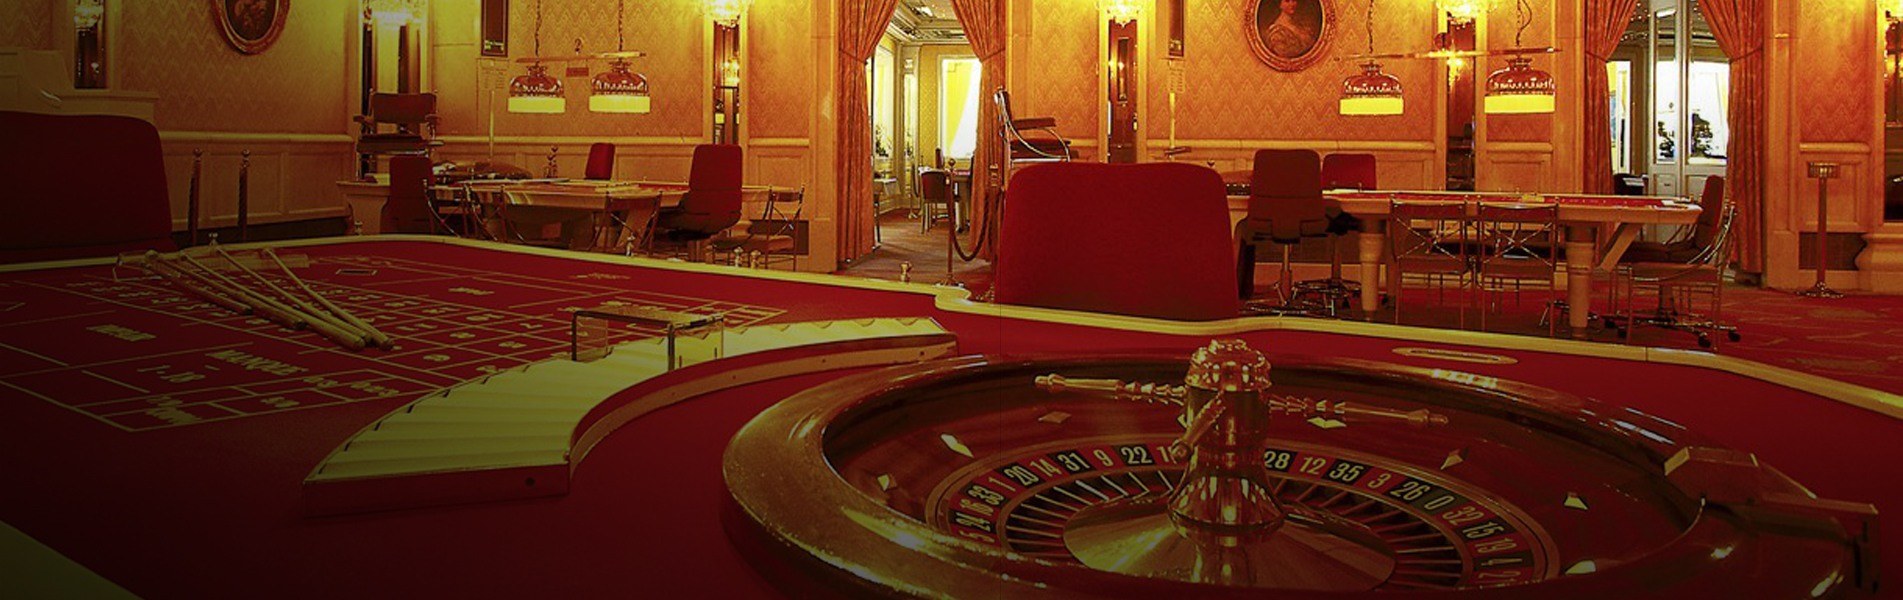 Casino Bad homburg 1 1903x600 1